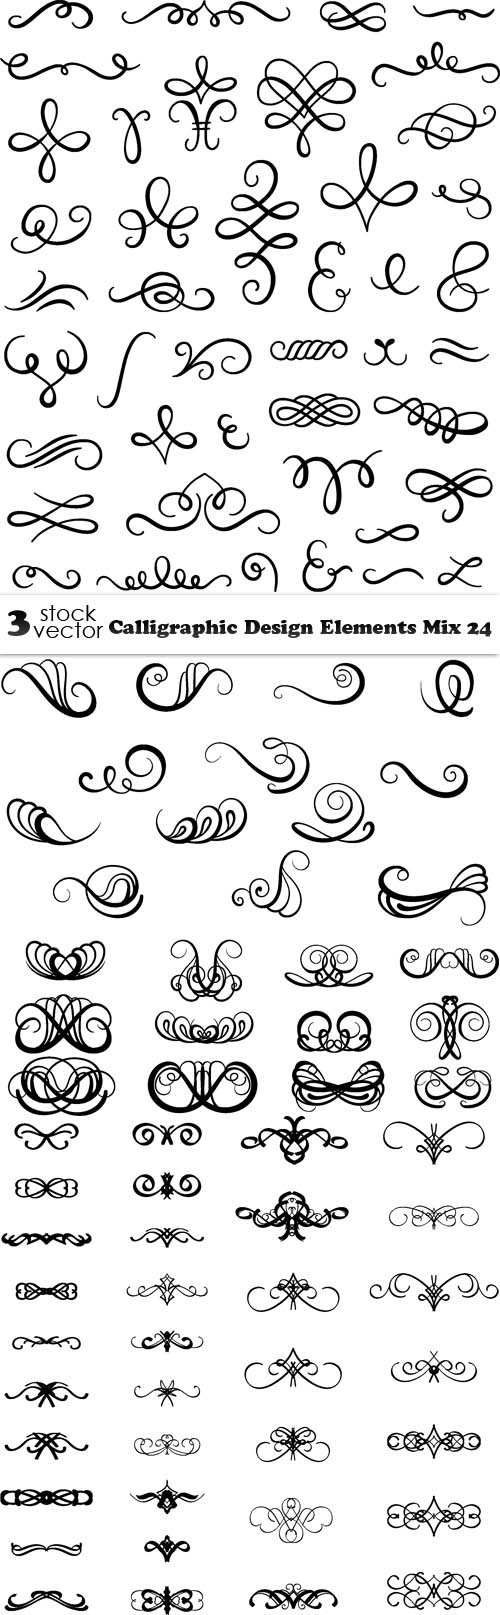 Vectors - Calligraphic Design Elements Mix 24